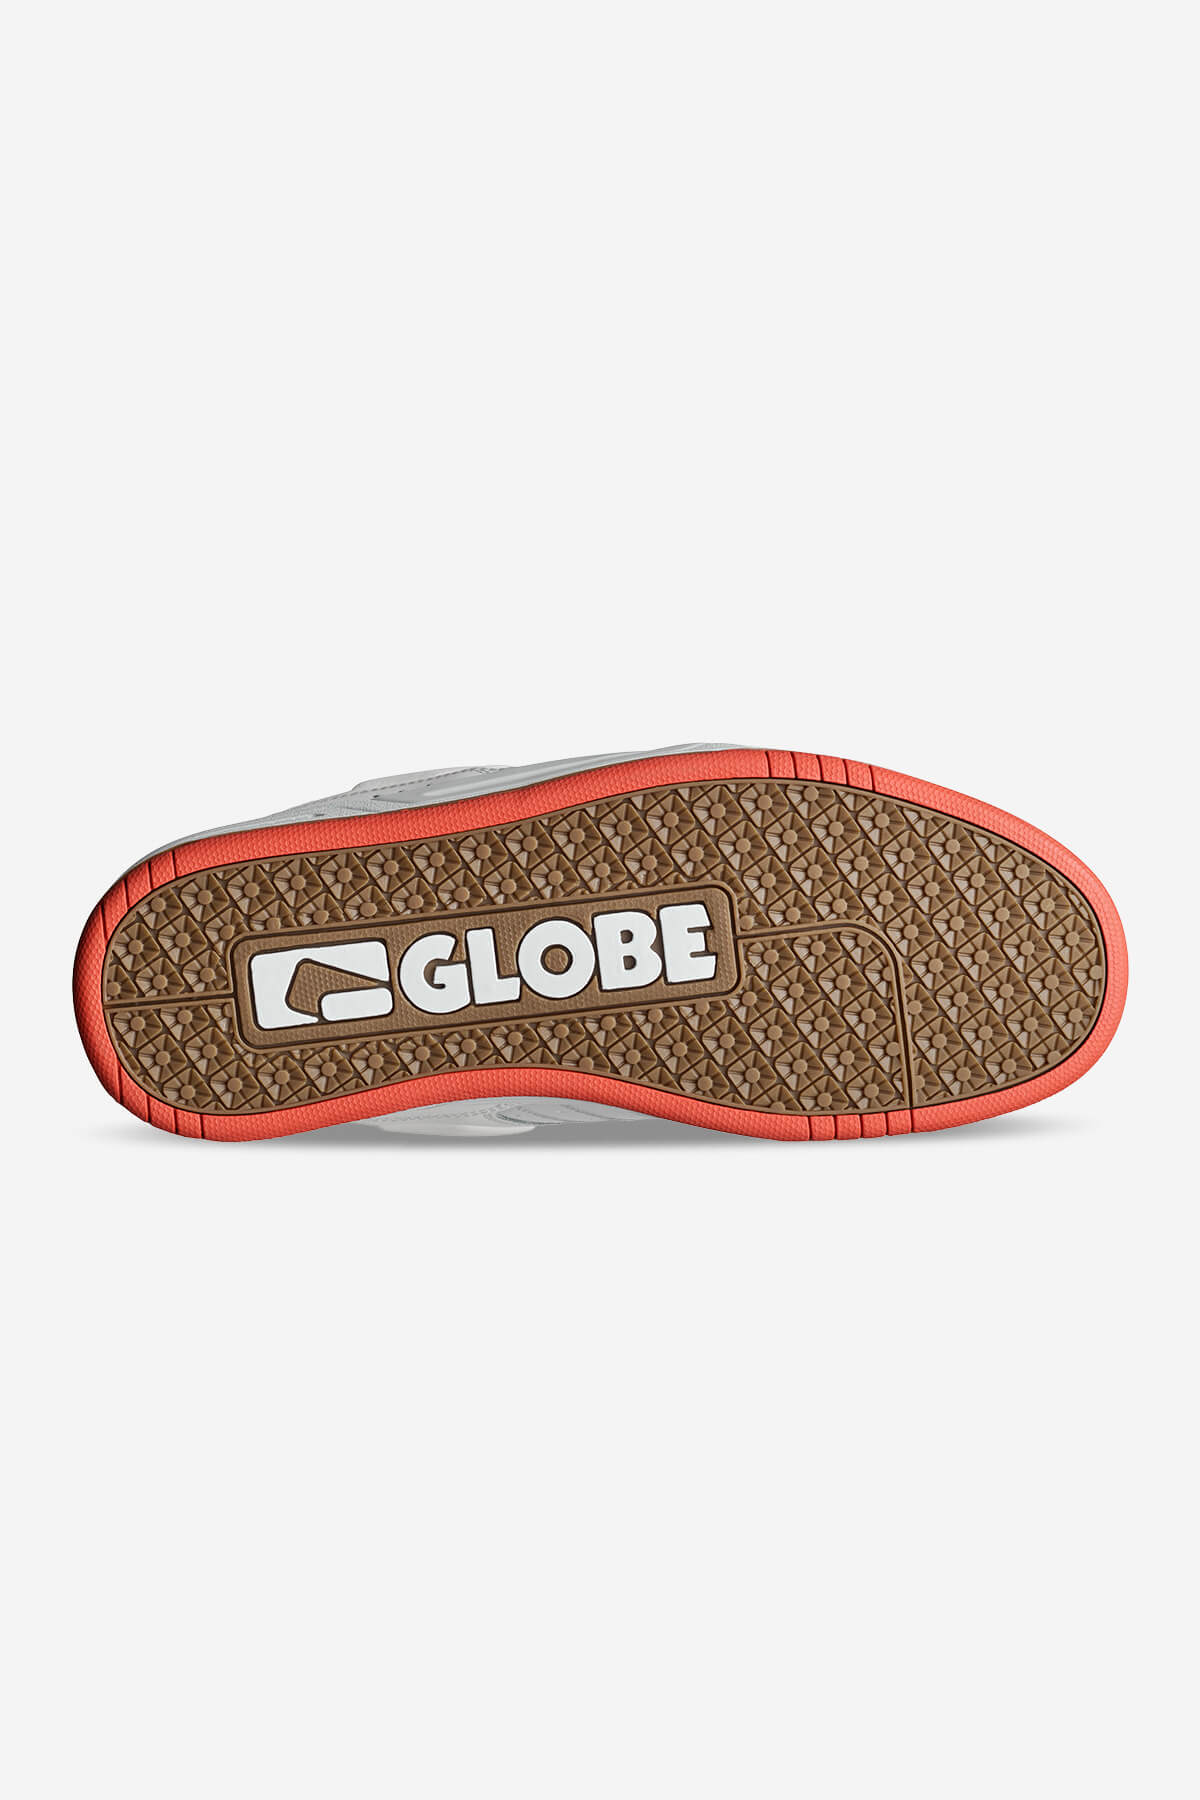 Globe - Zapatos Fusion - White/Red - skateboard